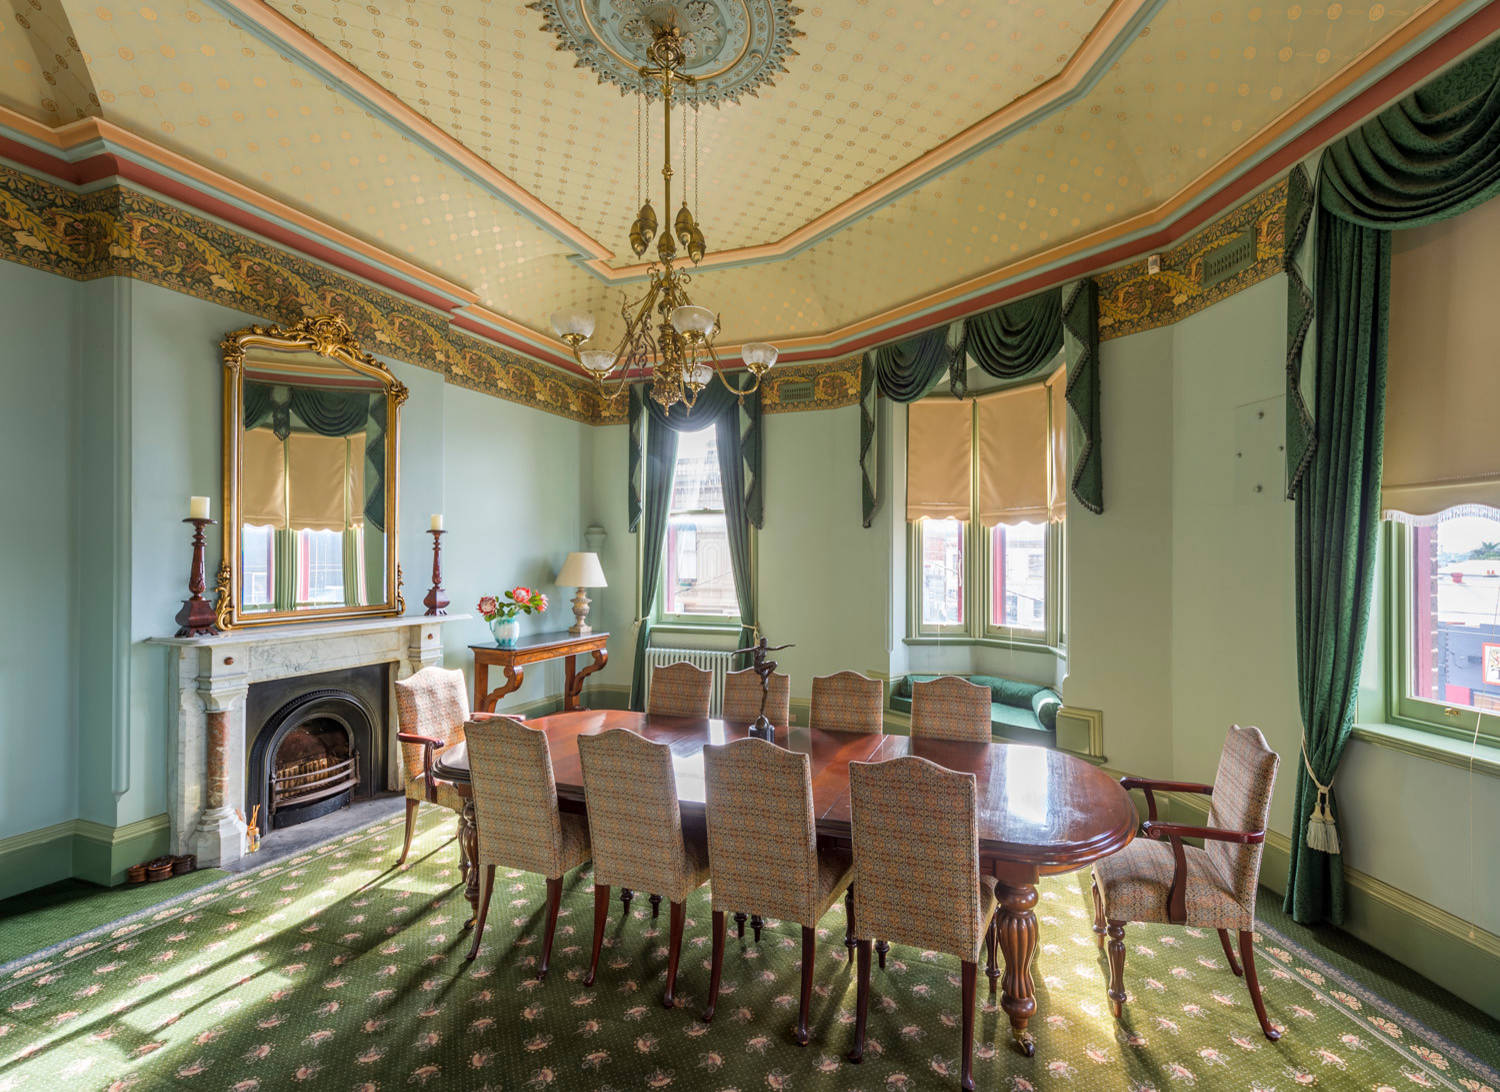 Phòng ăn phong cách Victoria với trần nhà trang trí cực kỳ công phu, rèm cửa sổ và thảm trải sàn phủ kín phòng ăn với màu xanh lá tươi tắn.